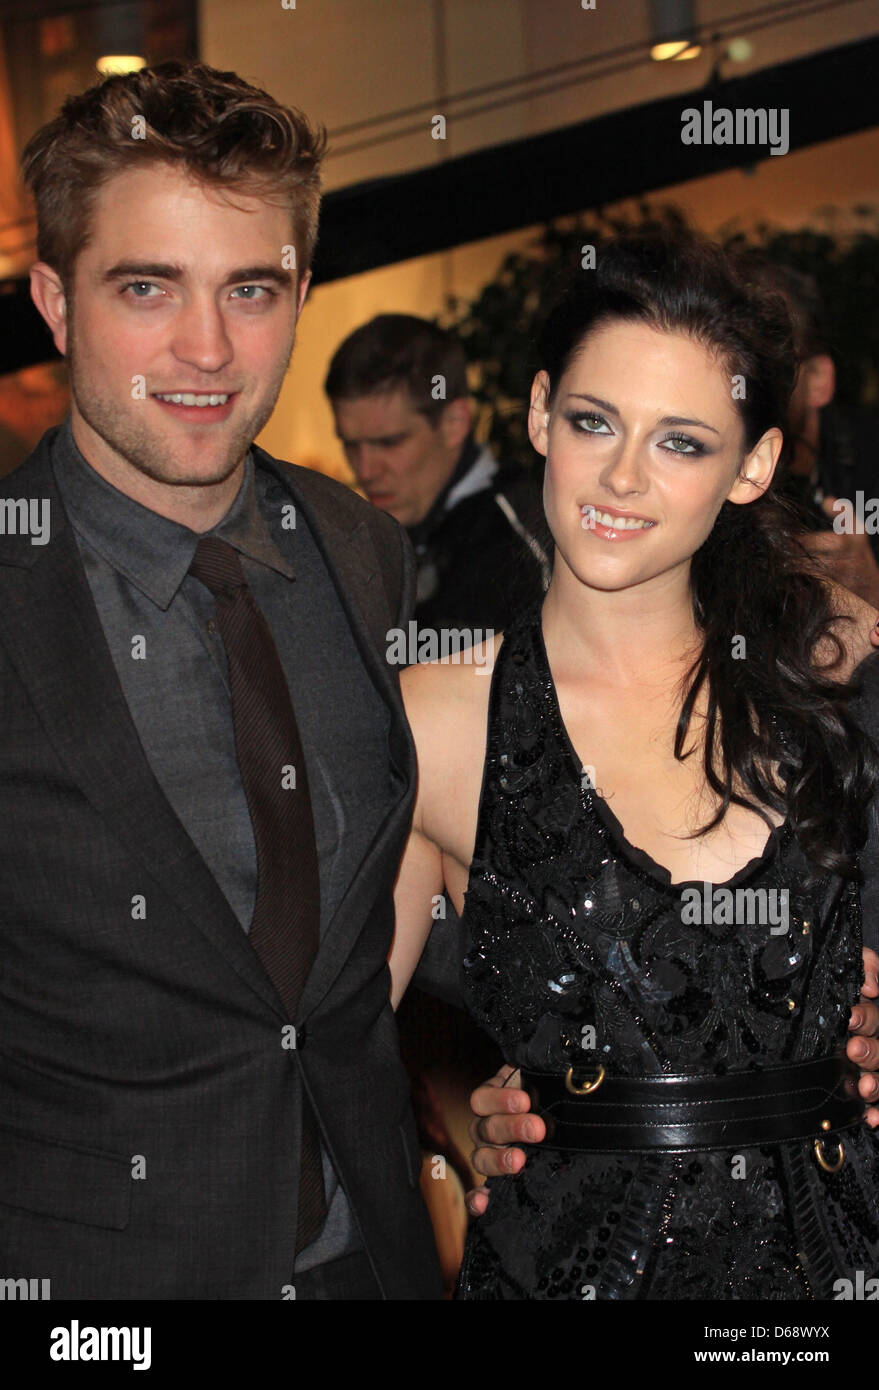 Robert Pattinson and Kristen Stewart The Twilight Saga: Breaking Dawn: Part  film premiere held at WestfieldArrivals Stock Photo